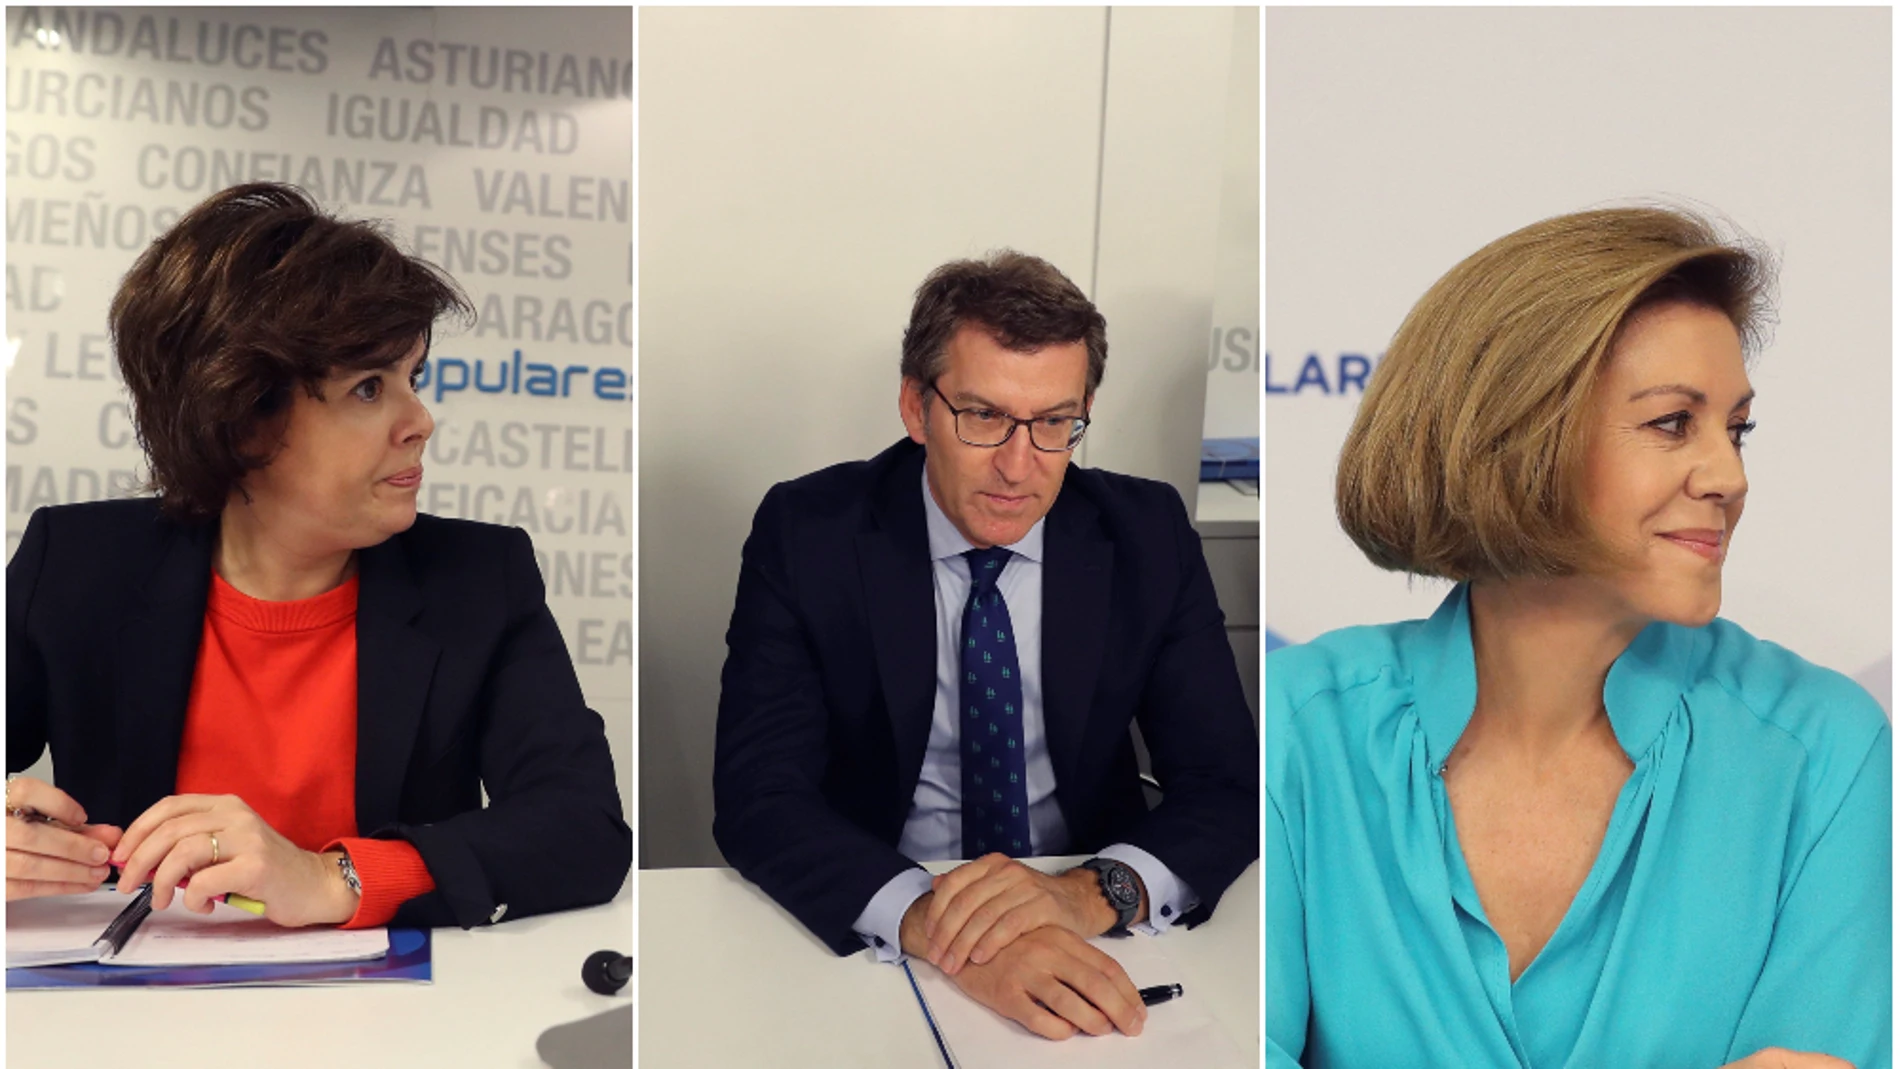 Posibles candidatos a sustituir a Rajoy al frente del PP